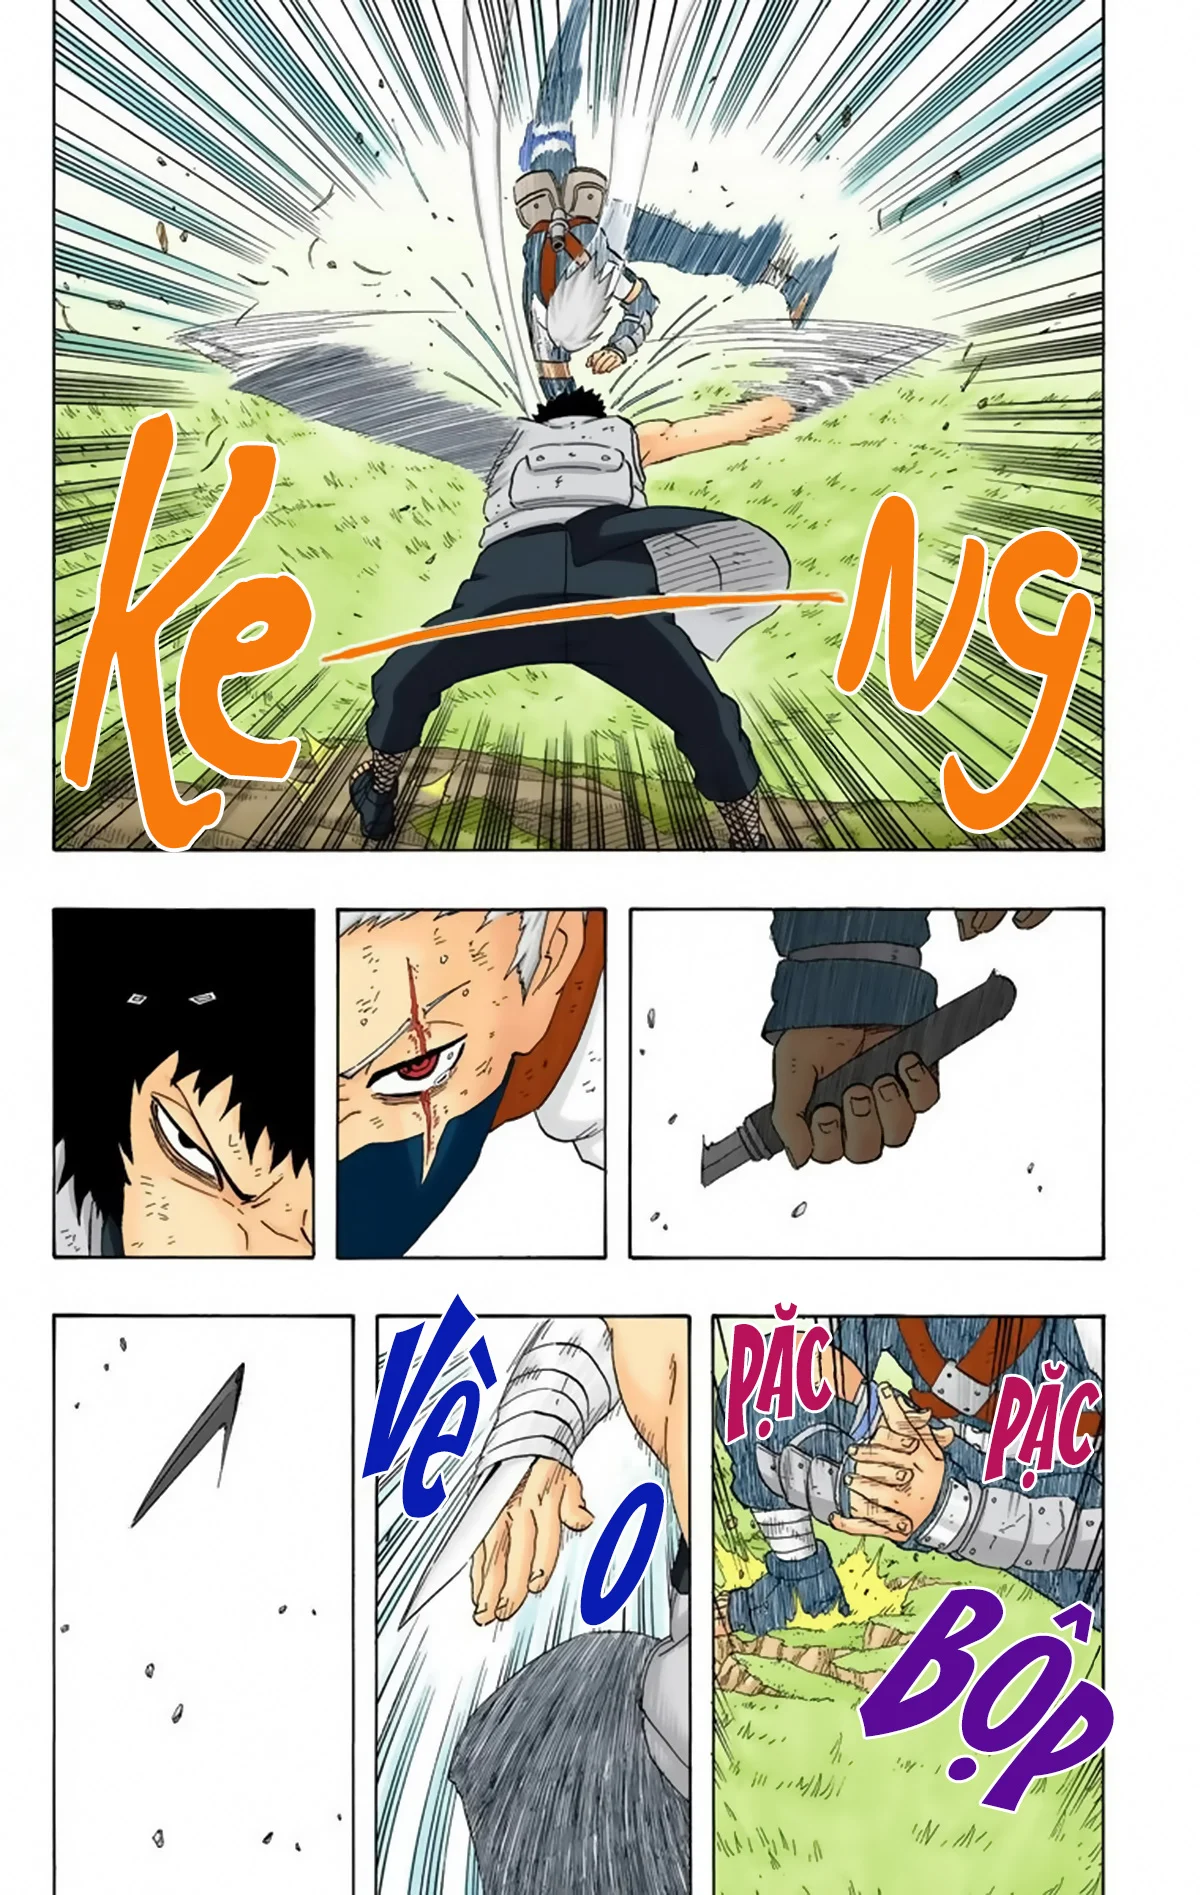 Naruto Full Color Edition Chương 244 Ngo i truy n 5 Anh h ng Sharingan Trang 4